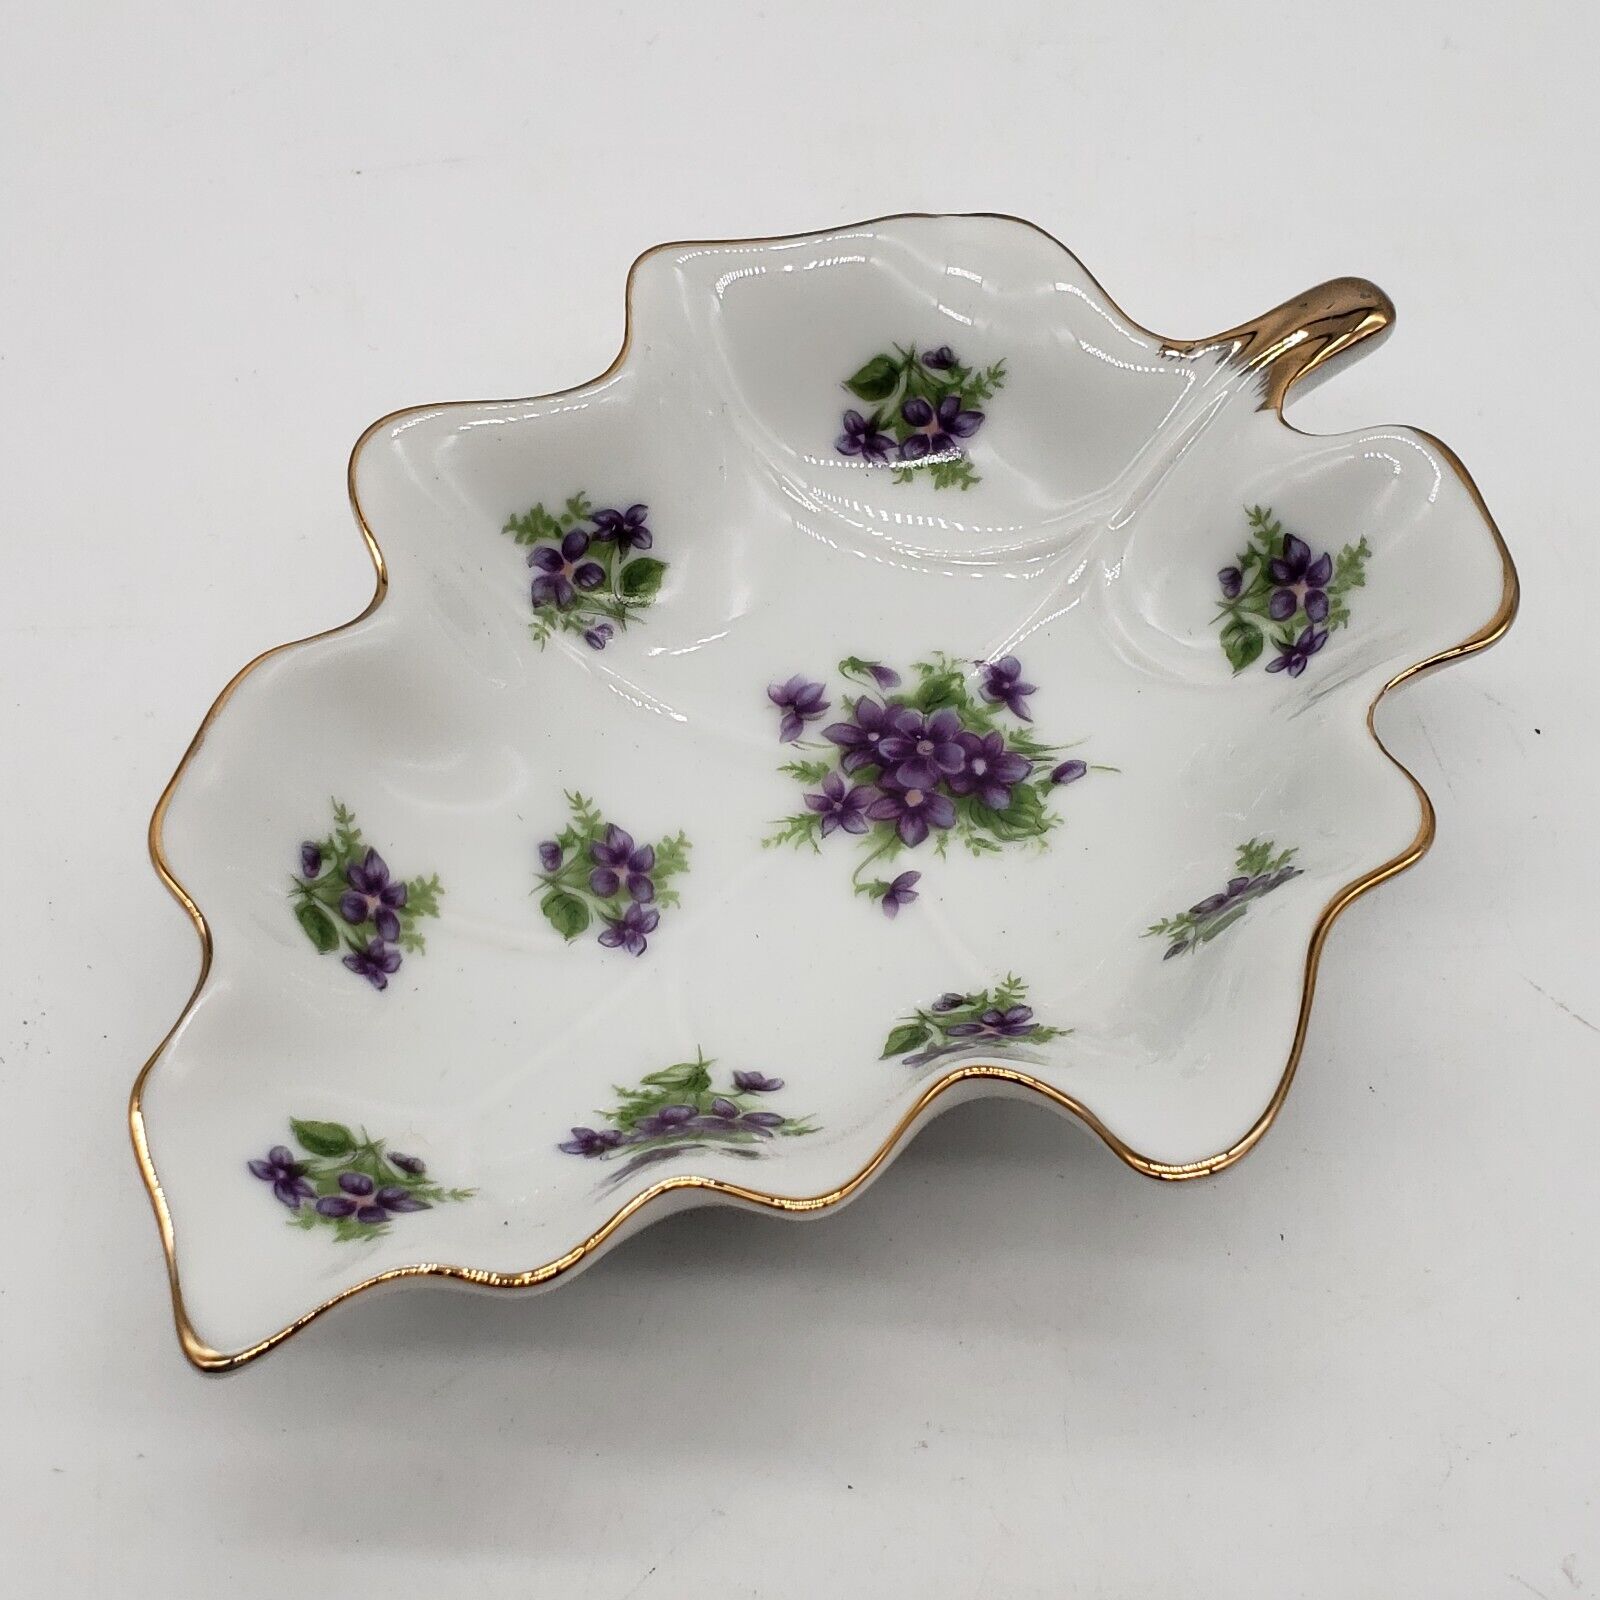 Vintage Lefton Hand Painted Leaf Trinket Dish with Violets and Gold Trim